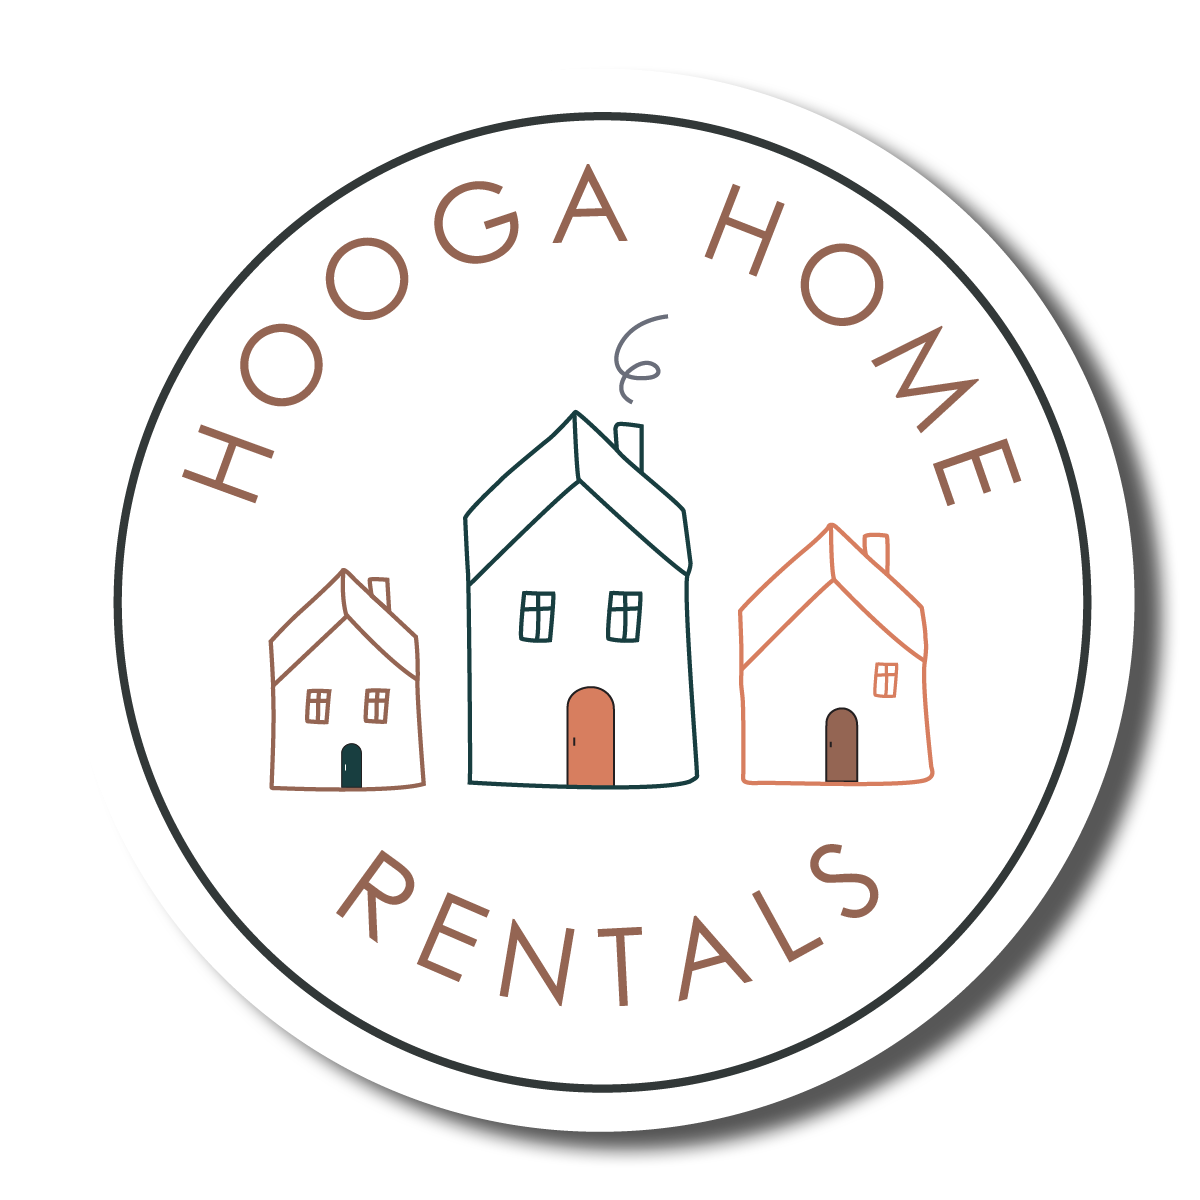 Hooga Home Rentals